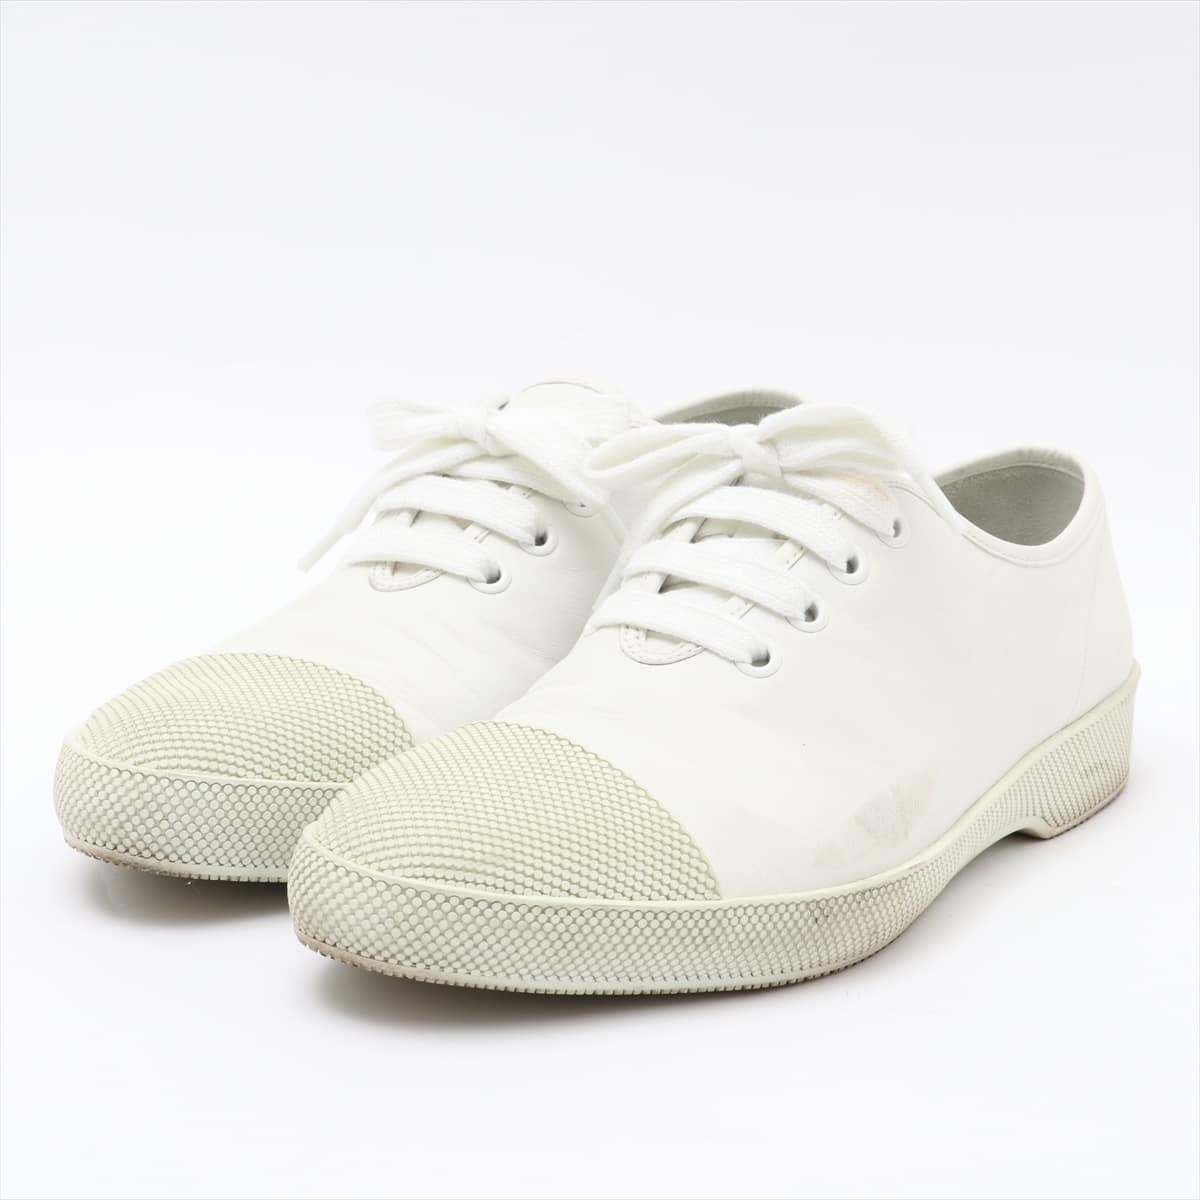 Prada Leather Sneakers 8 Men's White